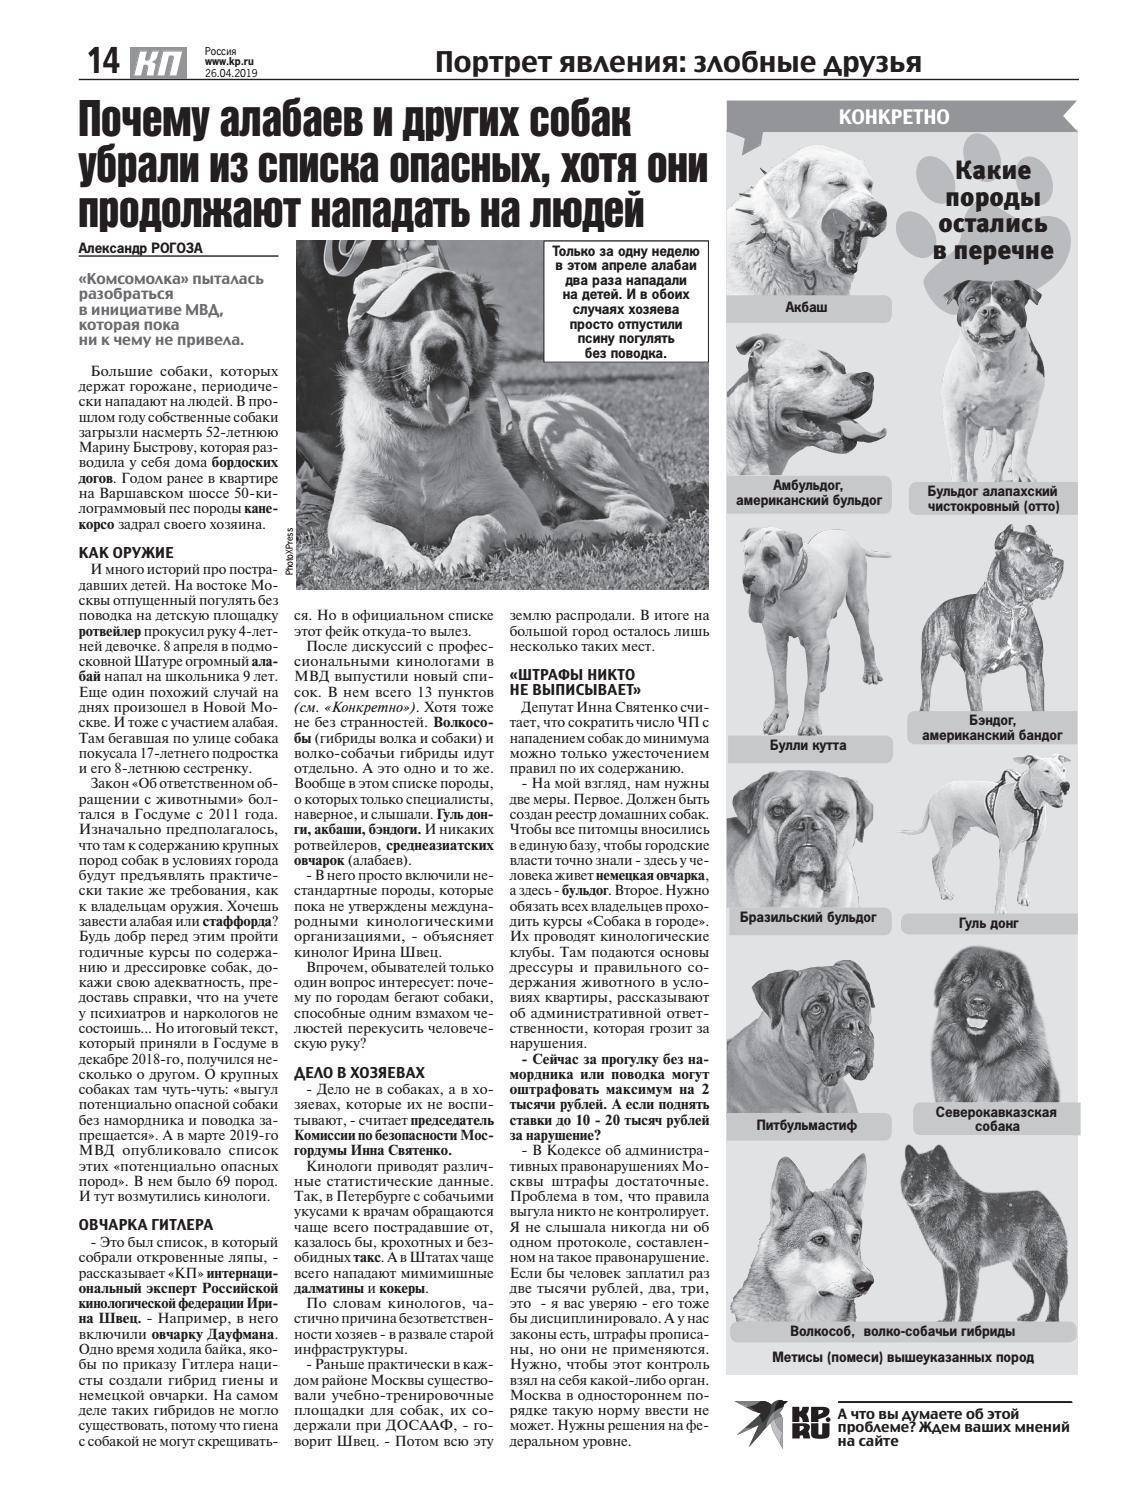 Какие породы собак запрещены в мире и в нашей стране? - dogsta.ru